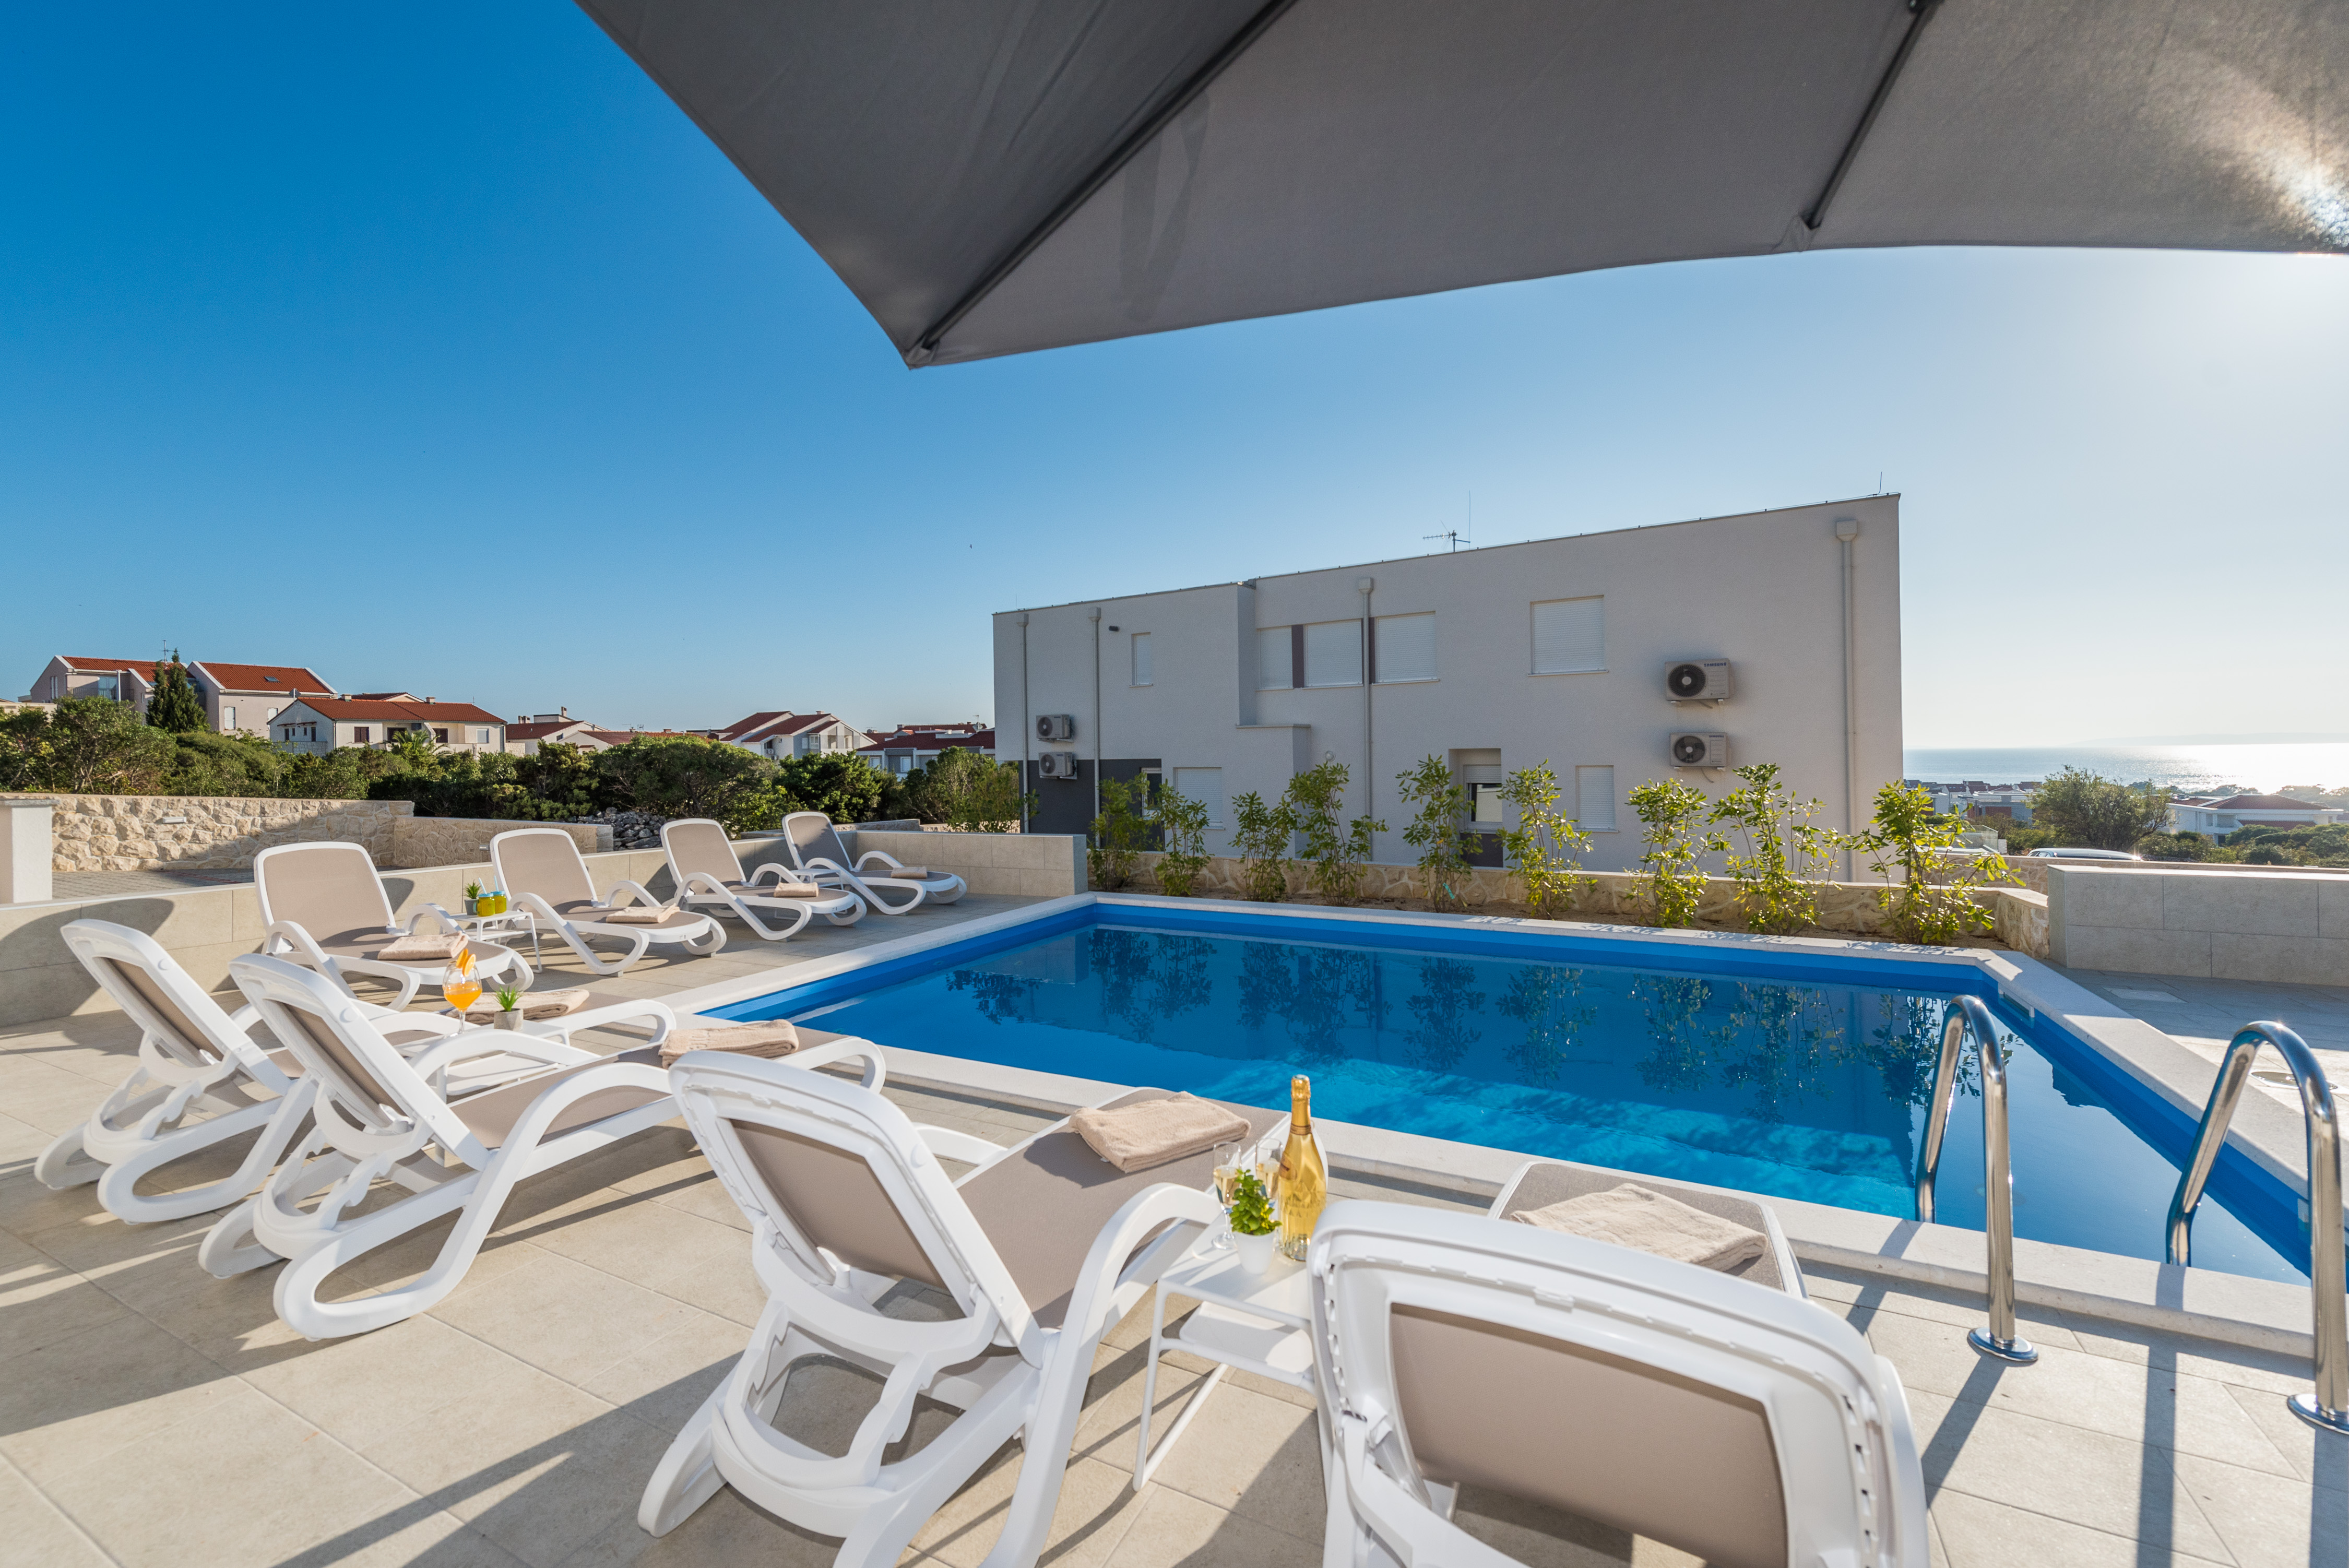 Zara, luxury apartment with a pool - Apartments for Rent in Novalja,  Ličko-senjska županija, Croatia - Airbnb